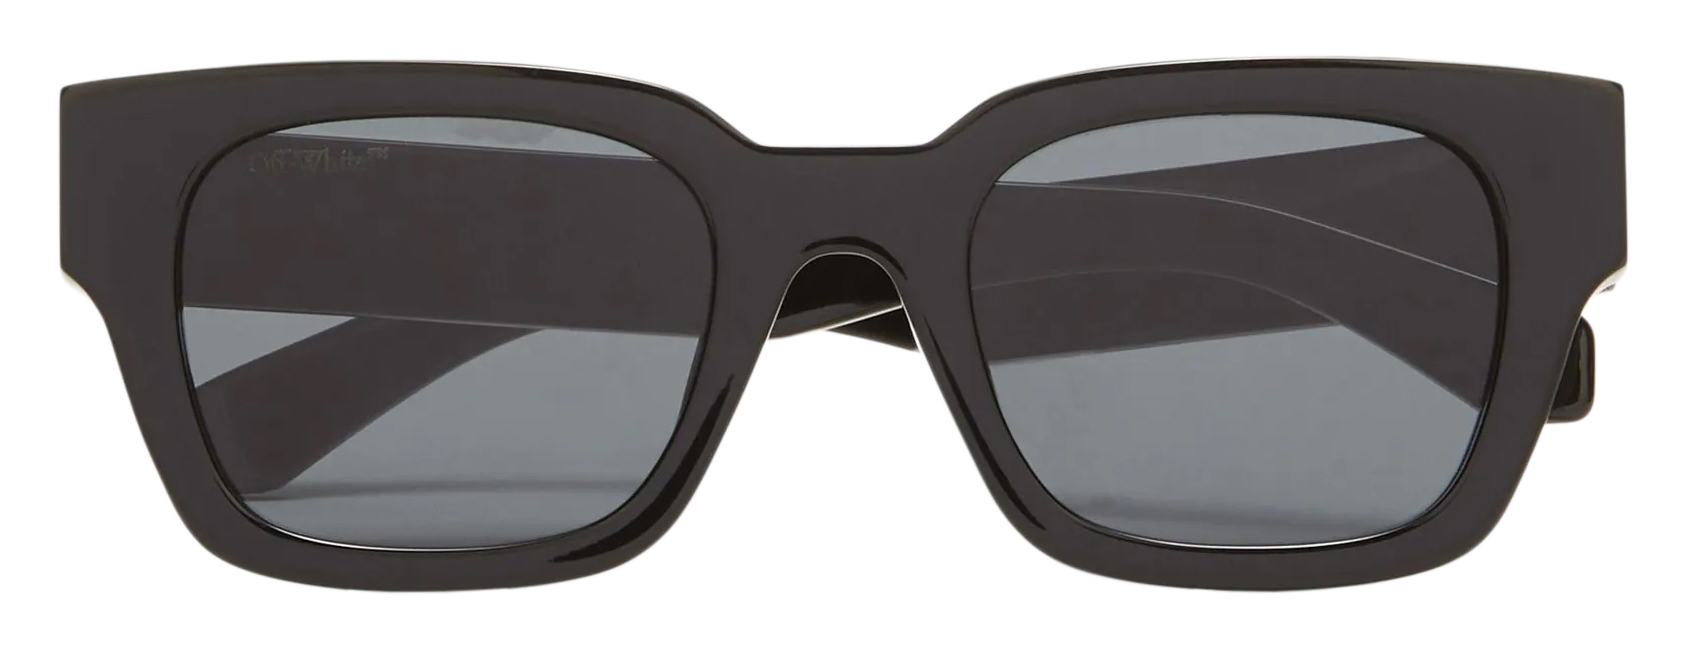 Off-White - Zurich Sunglasses - Black - Luxury - Off-White Eyewear